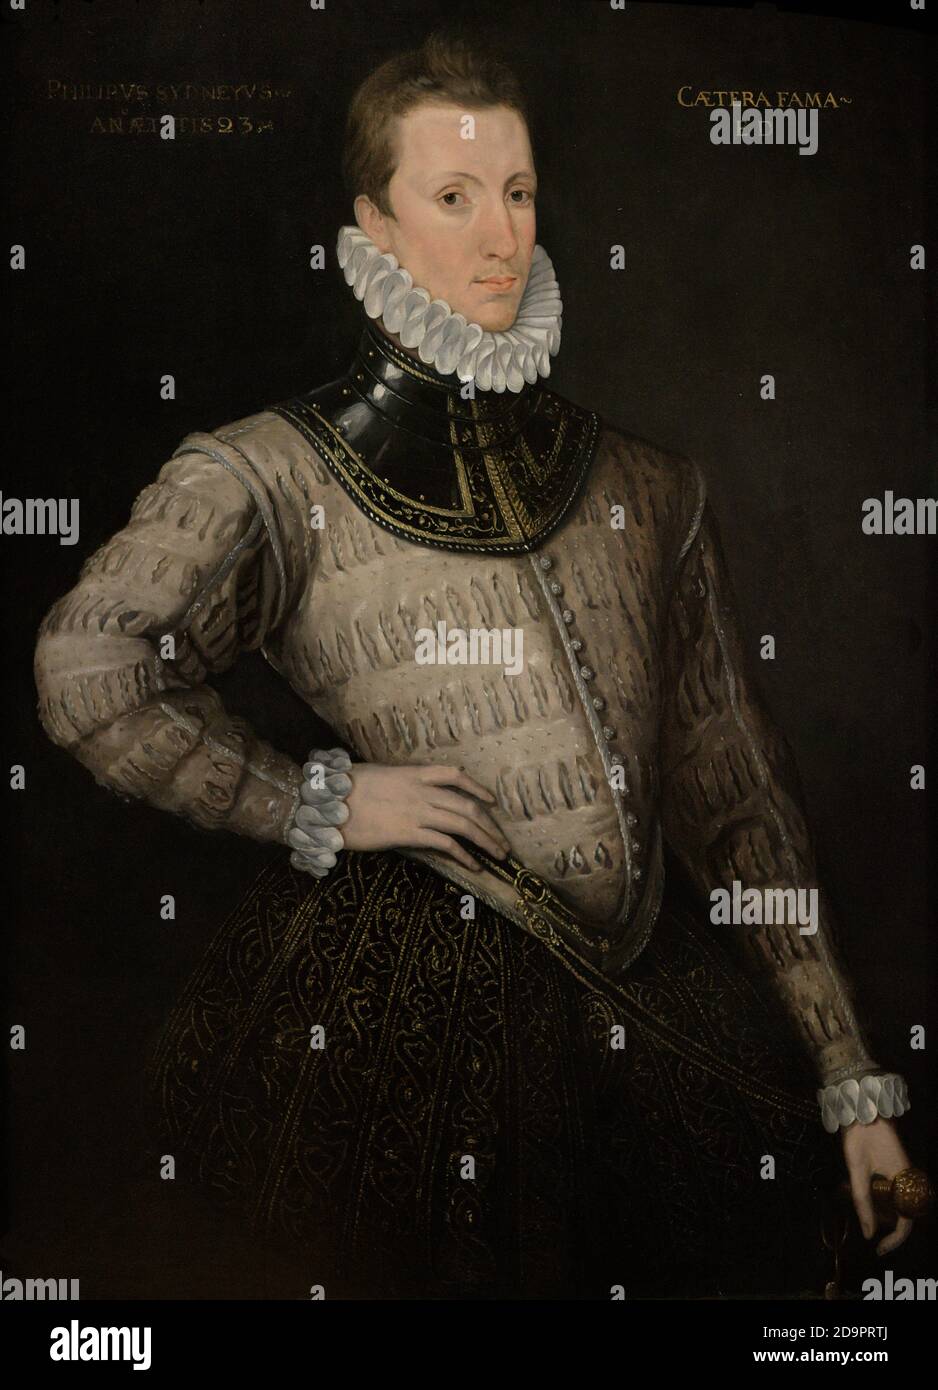 Sir Philip Sidney (1554-1586). Poète anglais, courtier et soldat. Époque élisabéthaine. Sidney a représenté sa 23e année. Portrait d'un artiste inconnu. Huile sur panneau, c. 1576. Musée national du portrait. Londres, Angleterre, Royaume-Uni. Banque D'Images